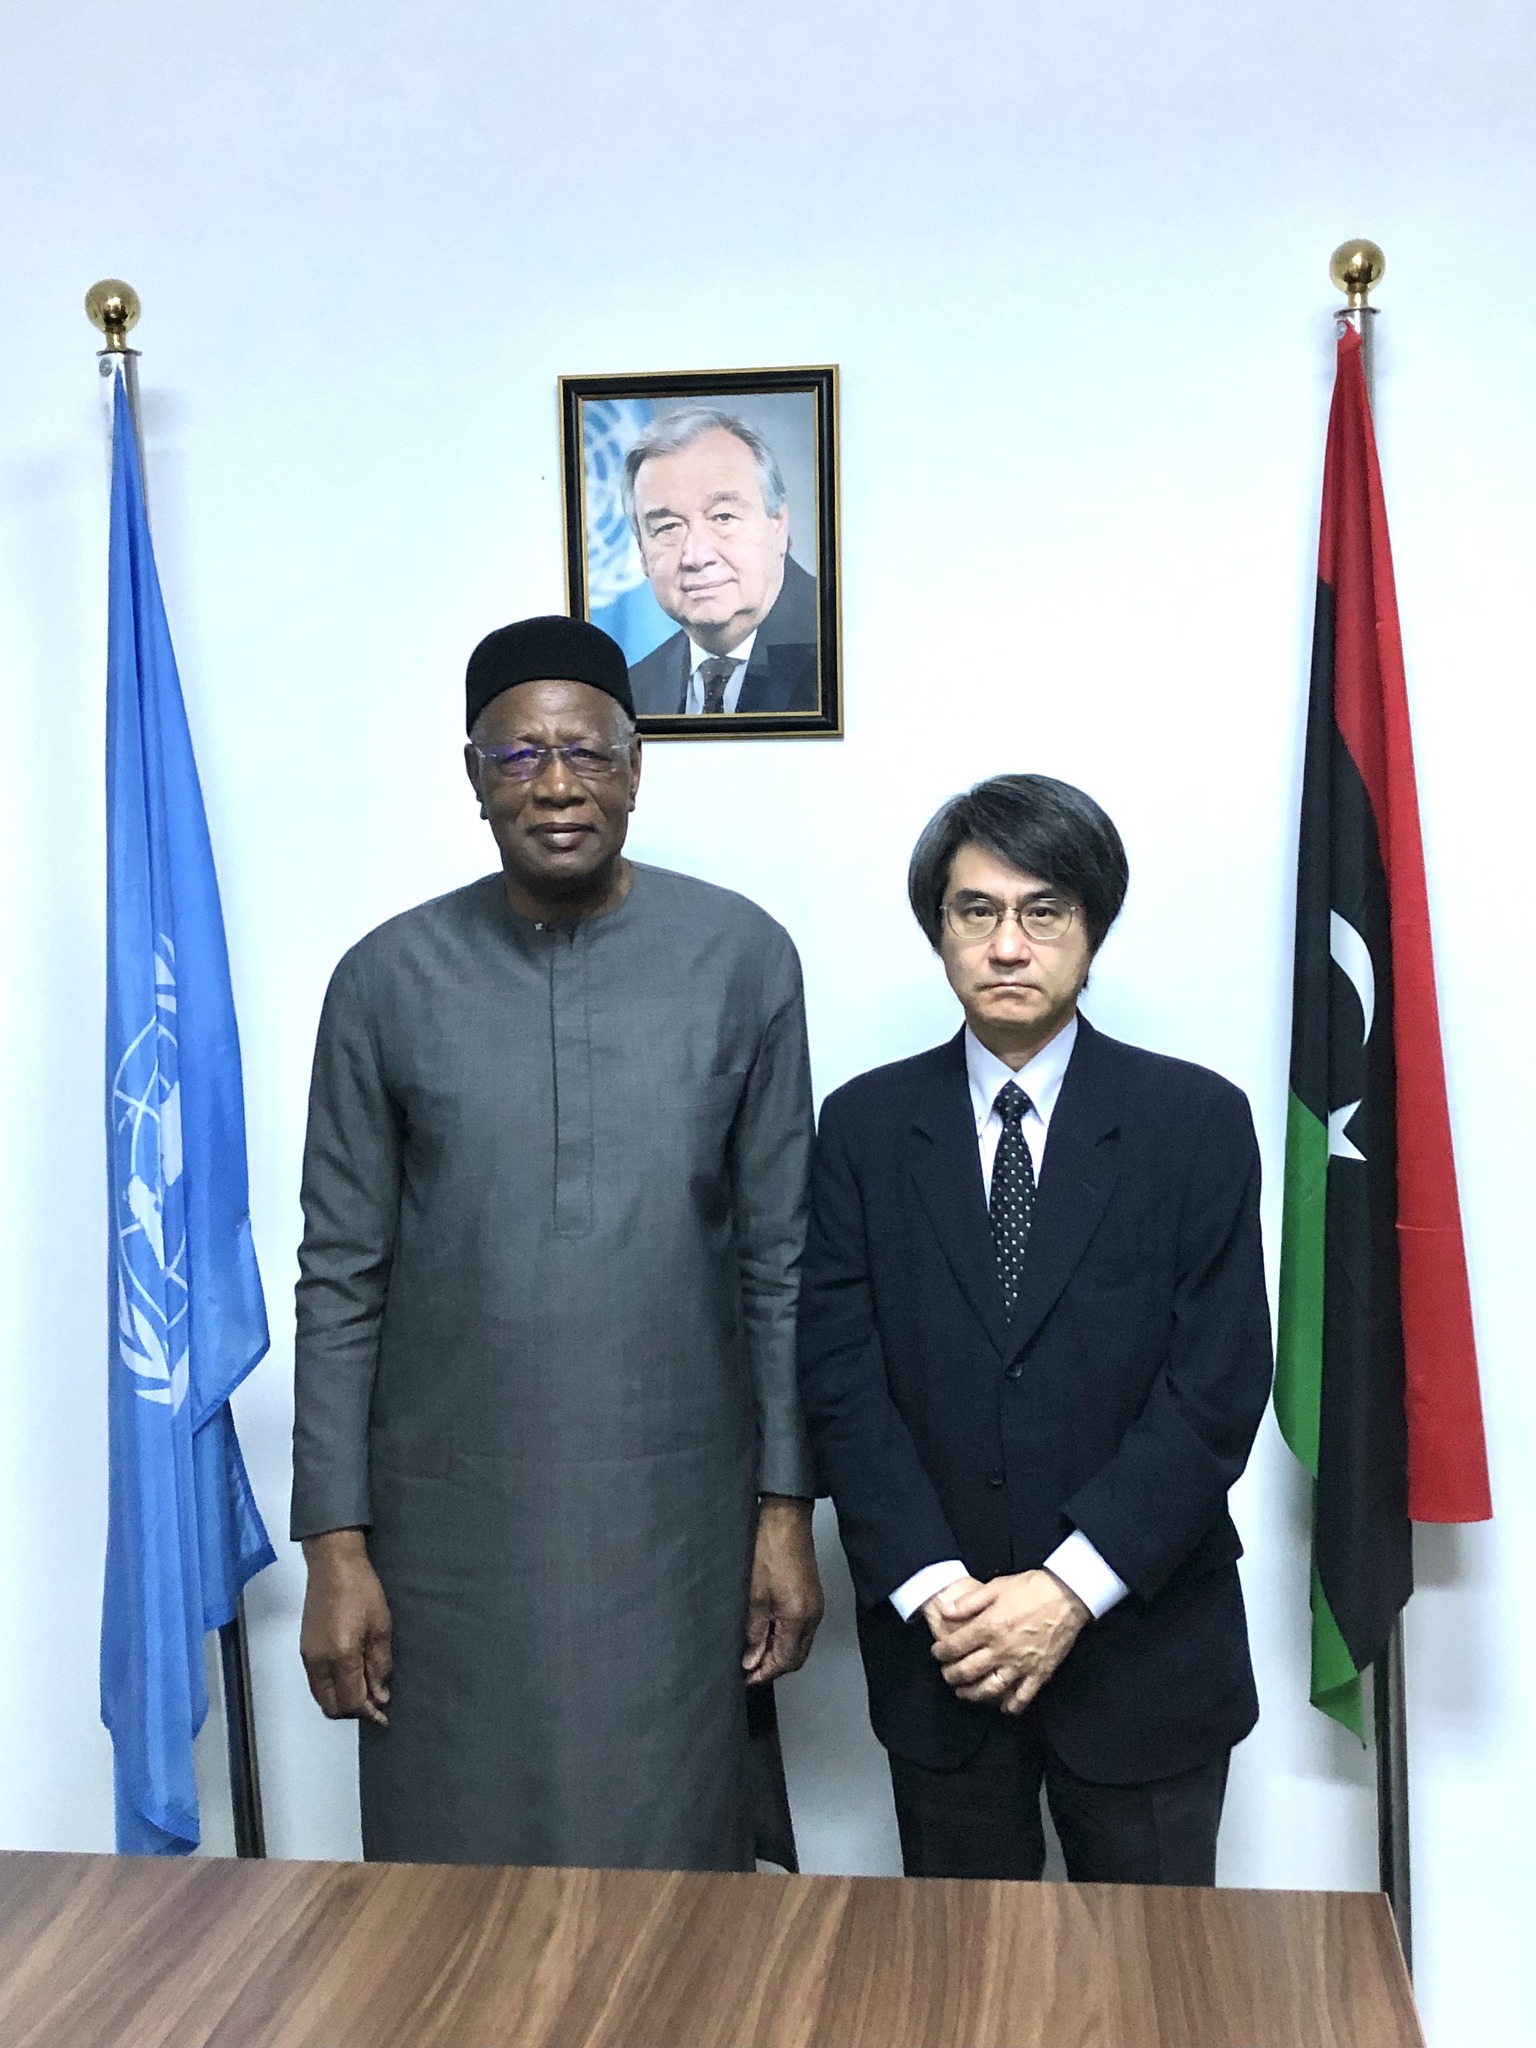 سفير اليابان لدي ليبيا يبحث مع  " عبدالله باتيلي  " اخر التطورات التي تحيط بالعملية السياسية في ليبيا .